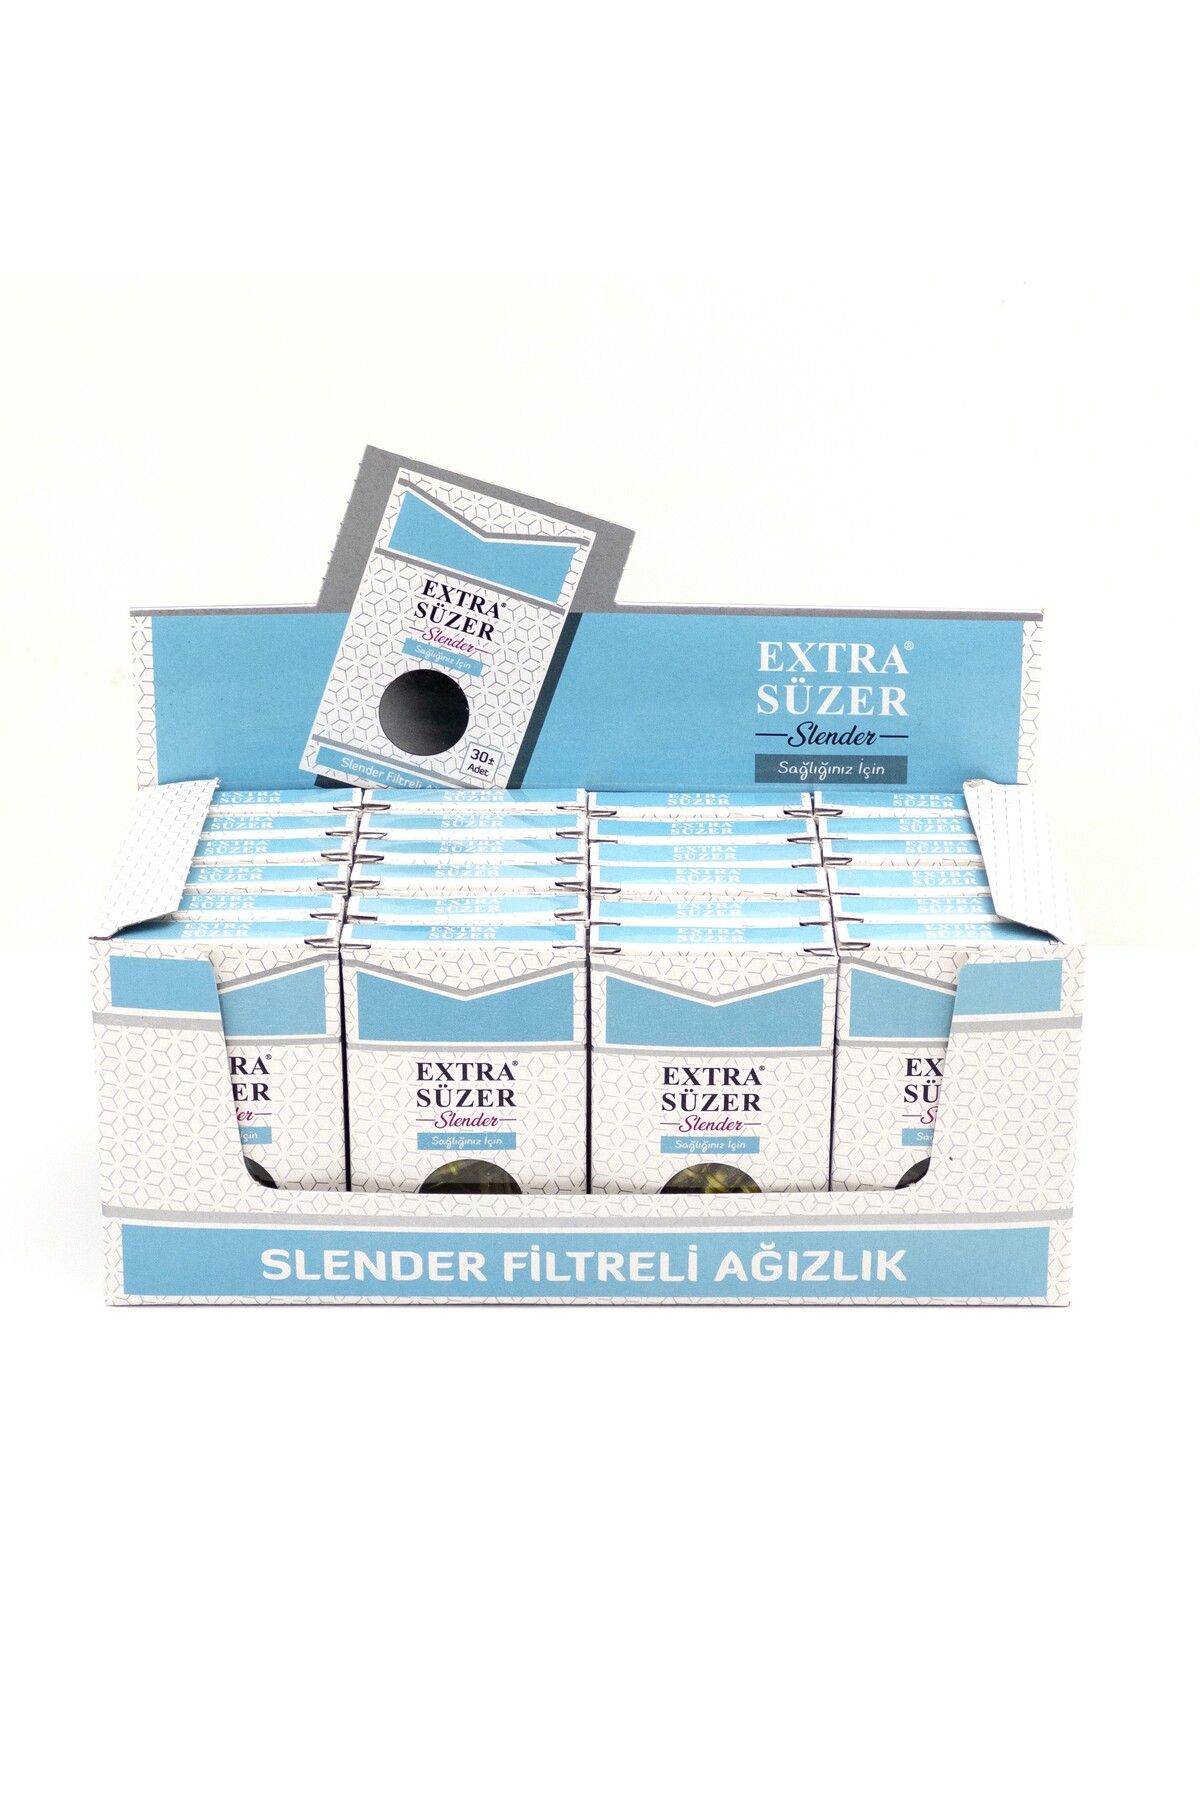 Smocer Extra Süzer Sağlığınız İçin Slender/Touch Sigaralar İçin Filtre Ağızlığı (24x30) 720'li Paket